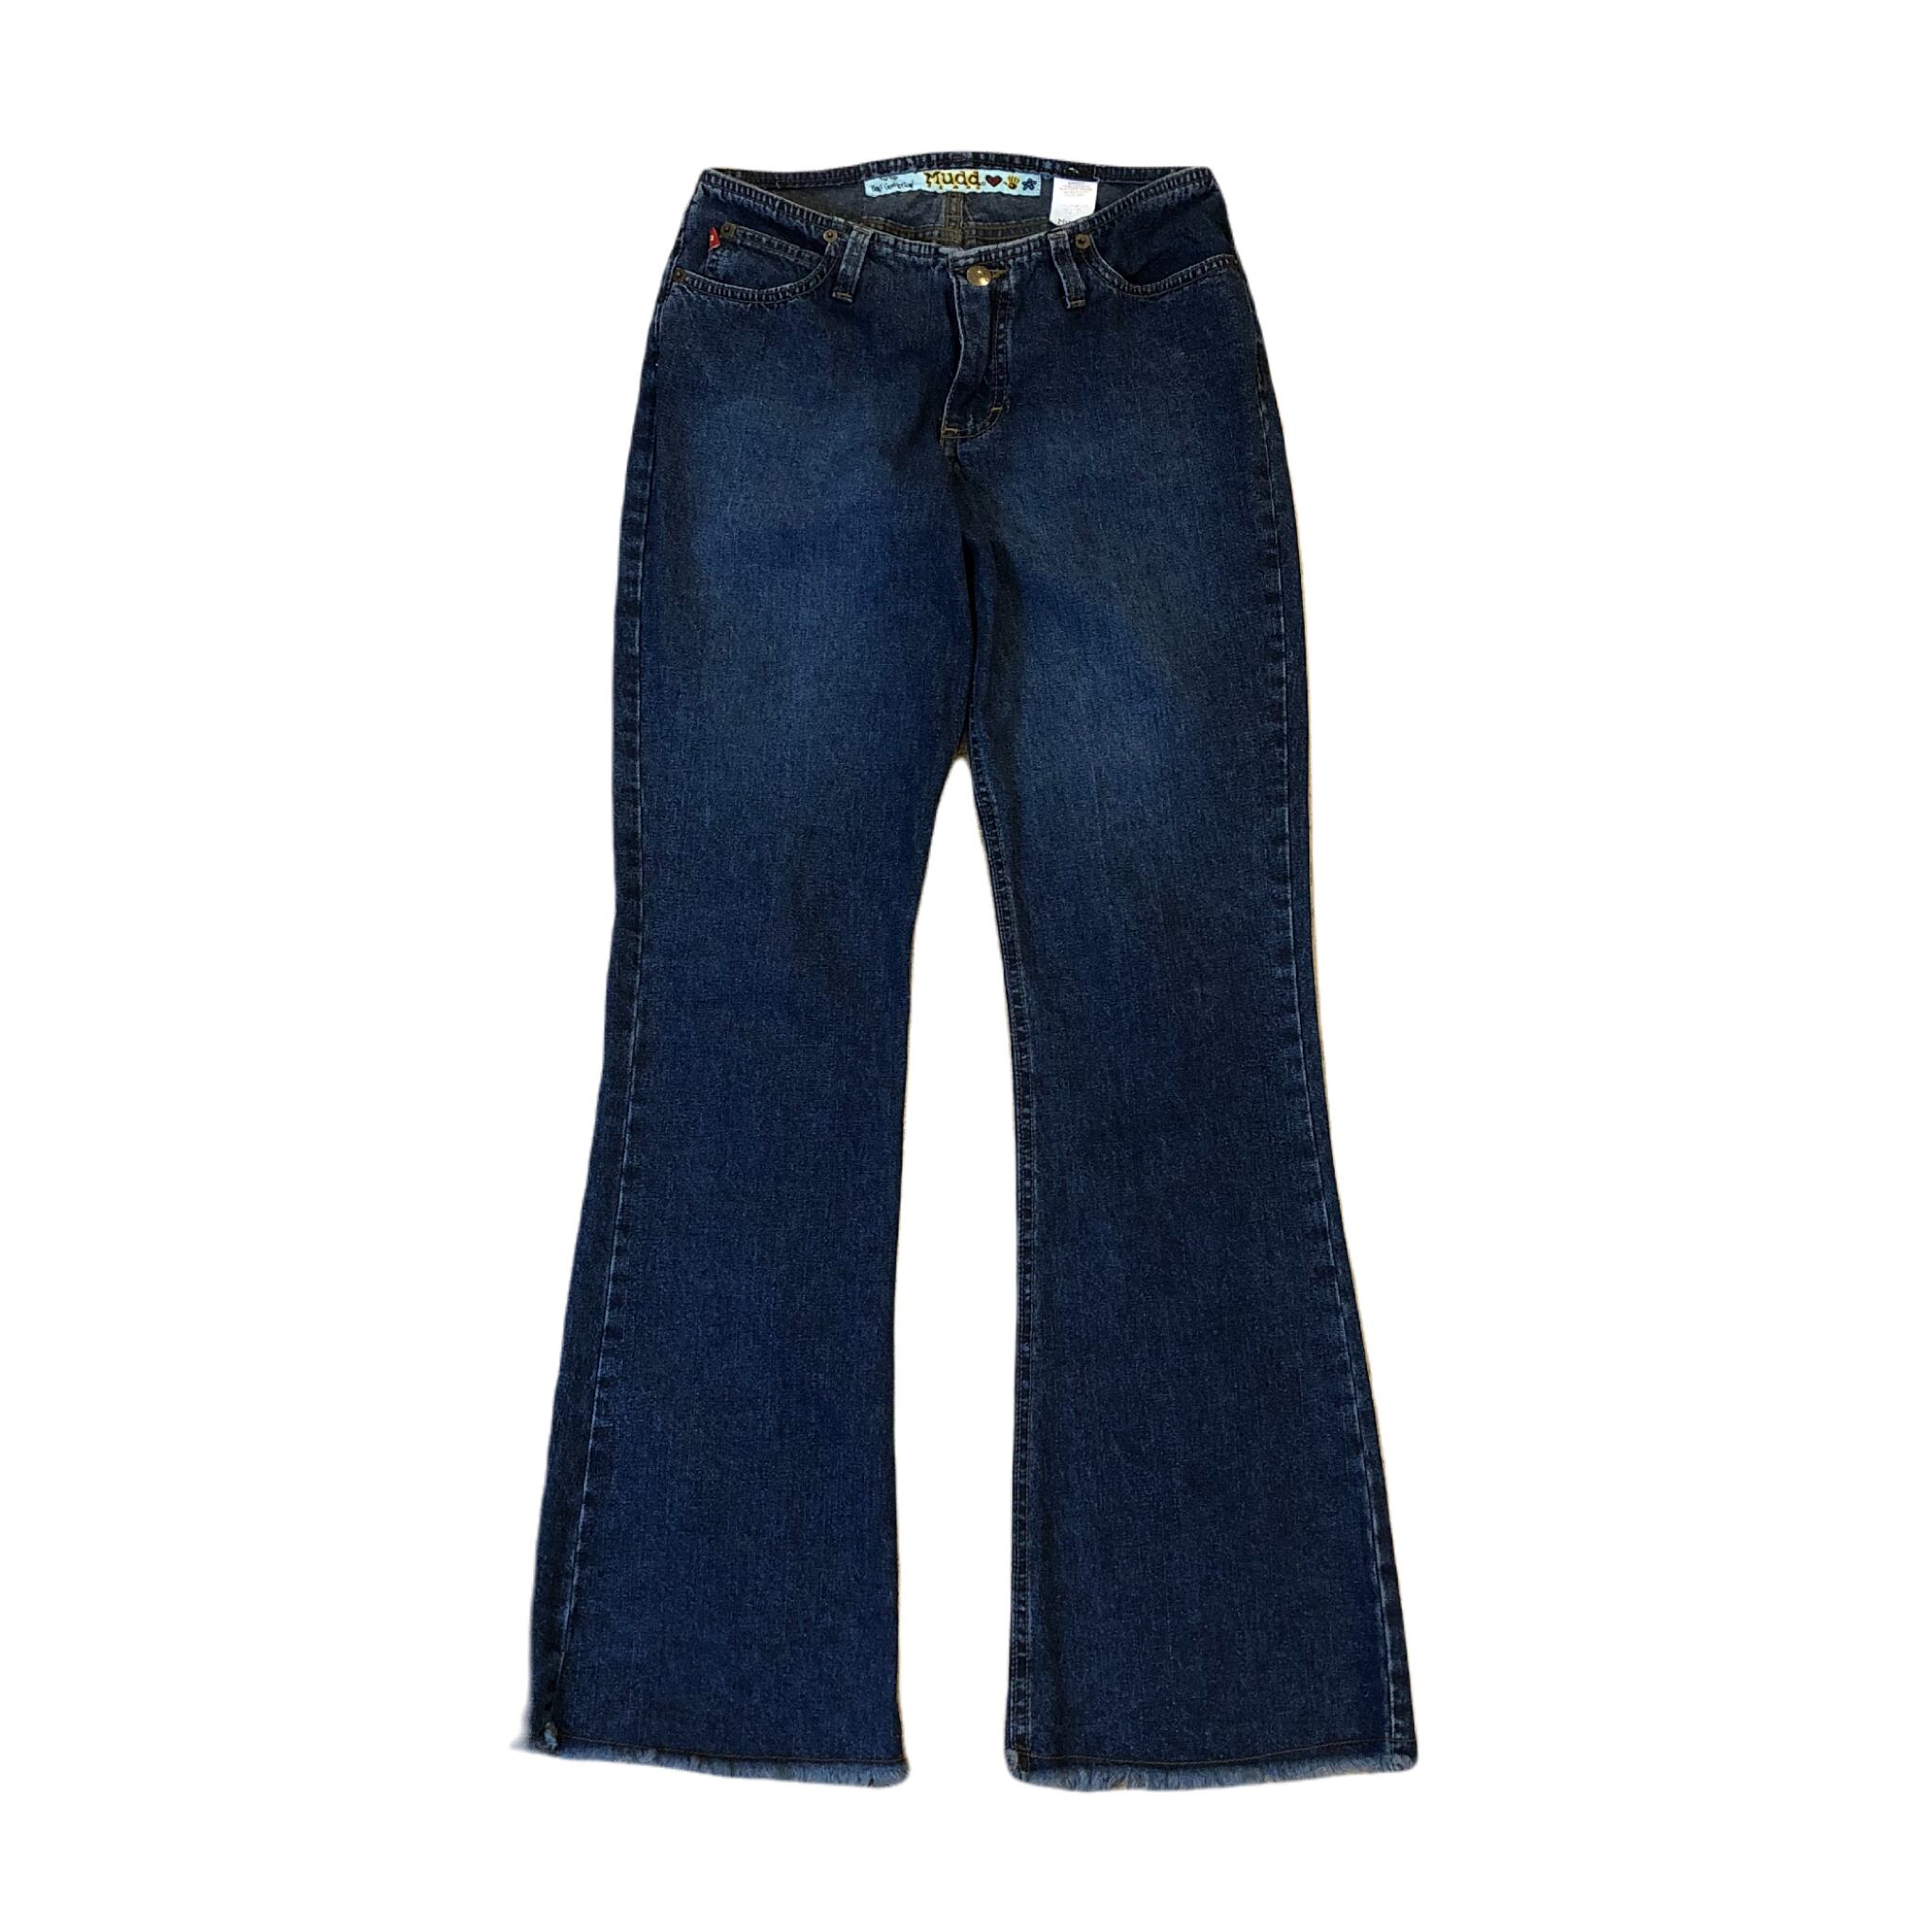 Mudd Jeans Flare Pants ¥6,200+tax